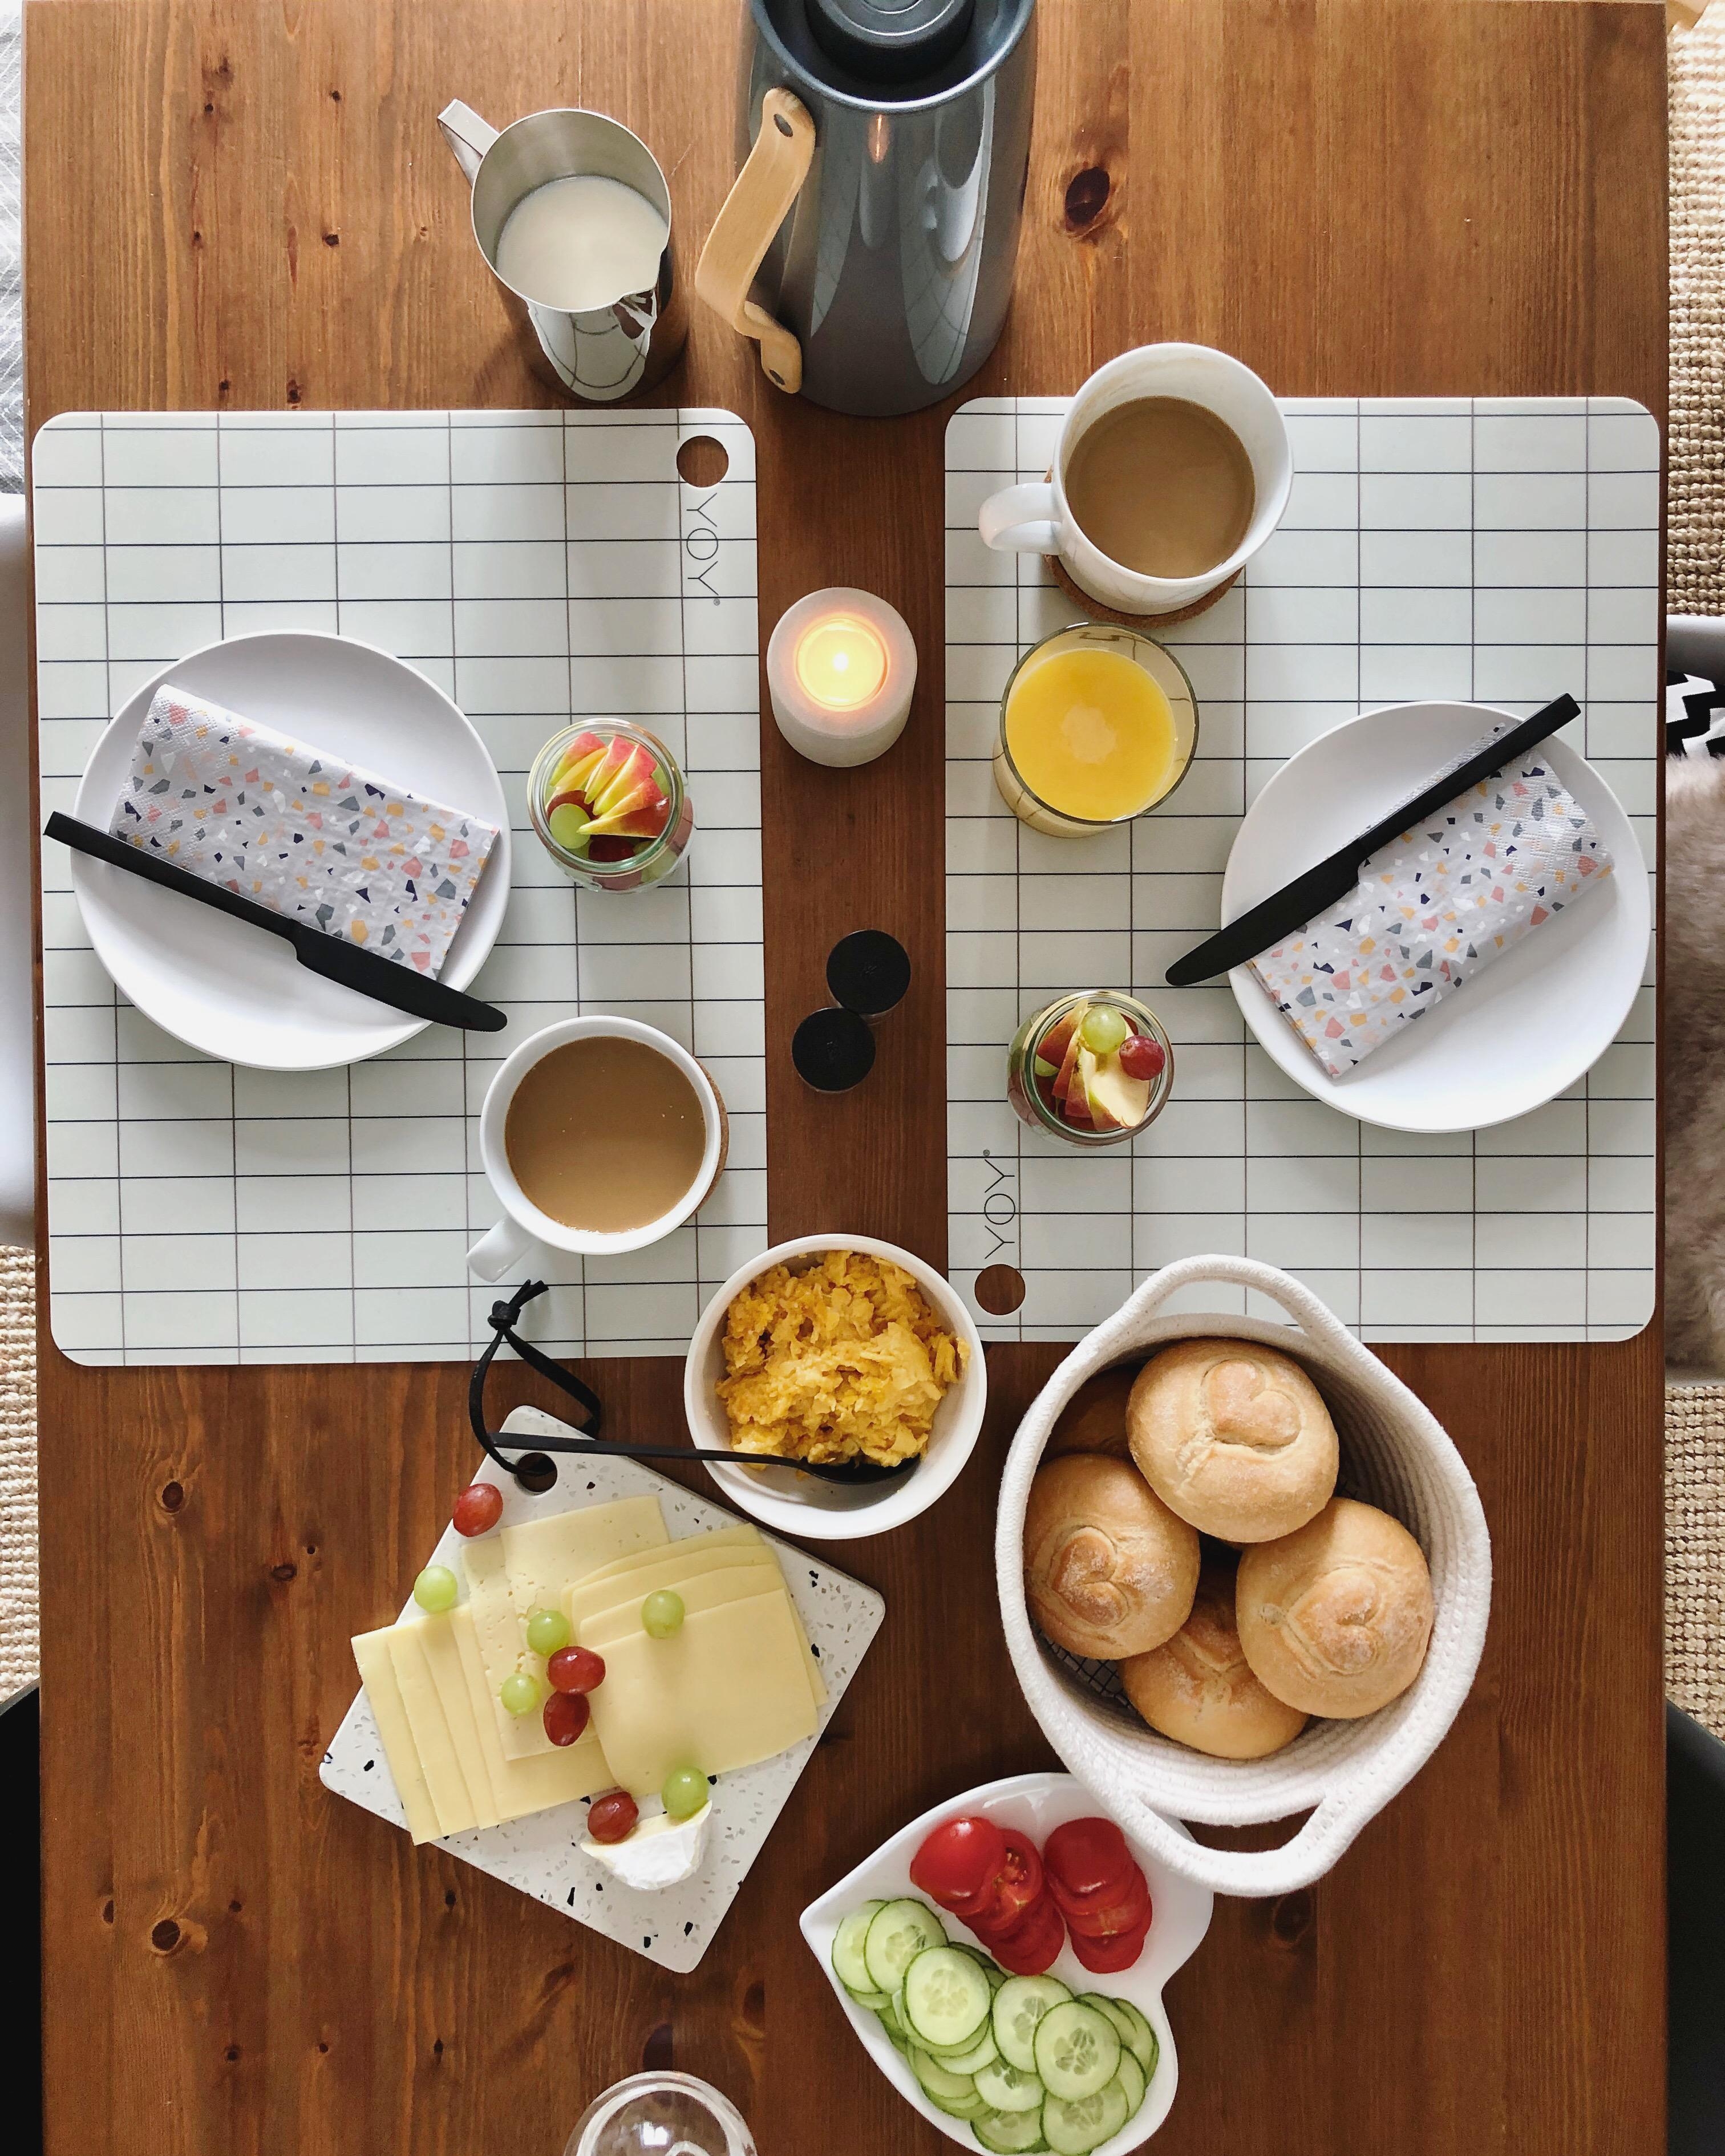 Dank dem #Feiertag gab es heute ein spätes #Frühstück ganz in #Ruhe 💛
#brunch #tischdeko #dekoideen #breakfast #flatlay